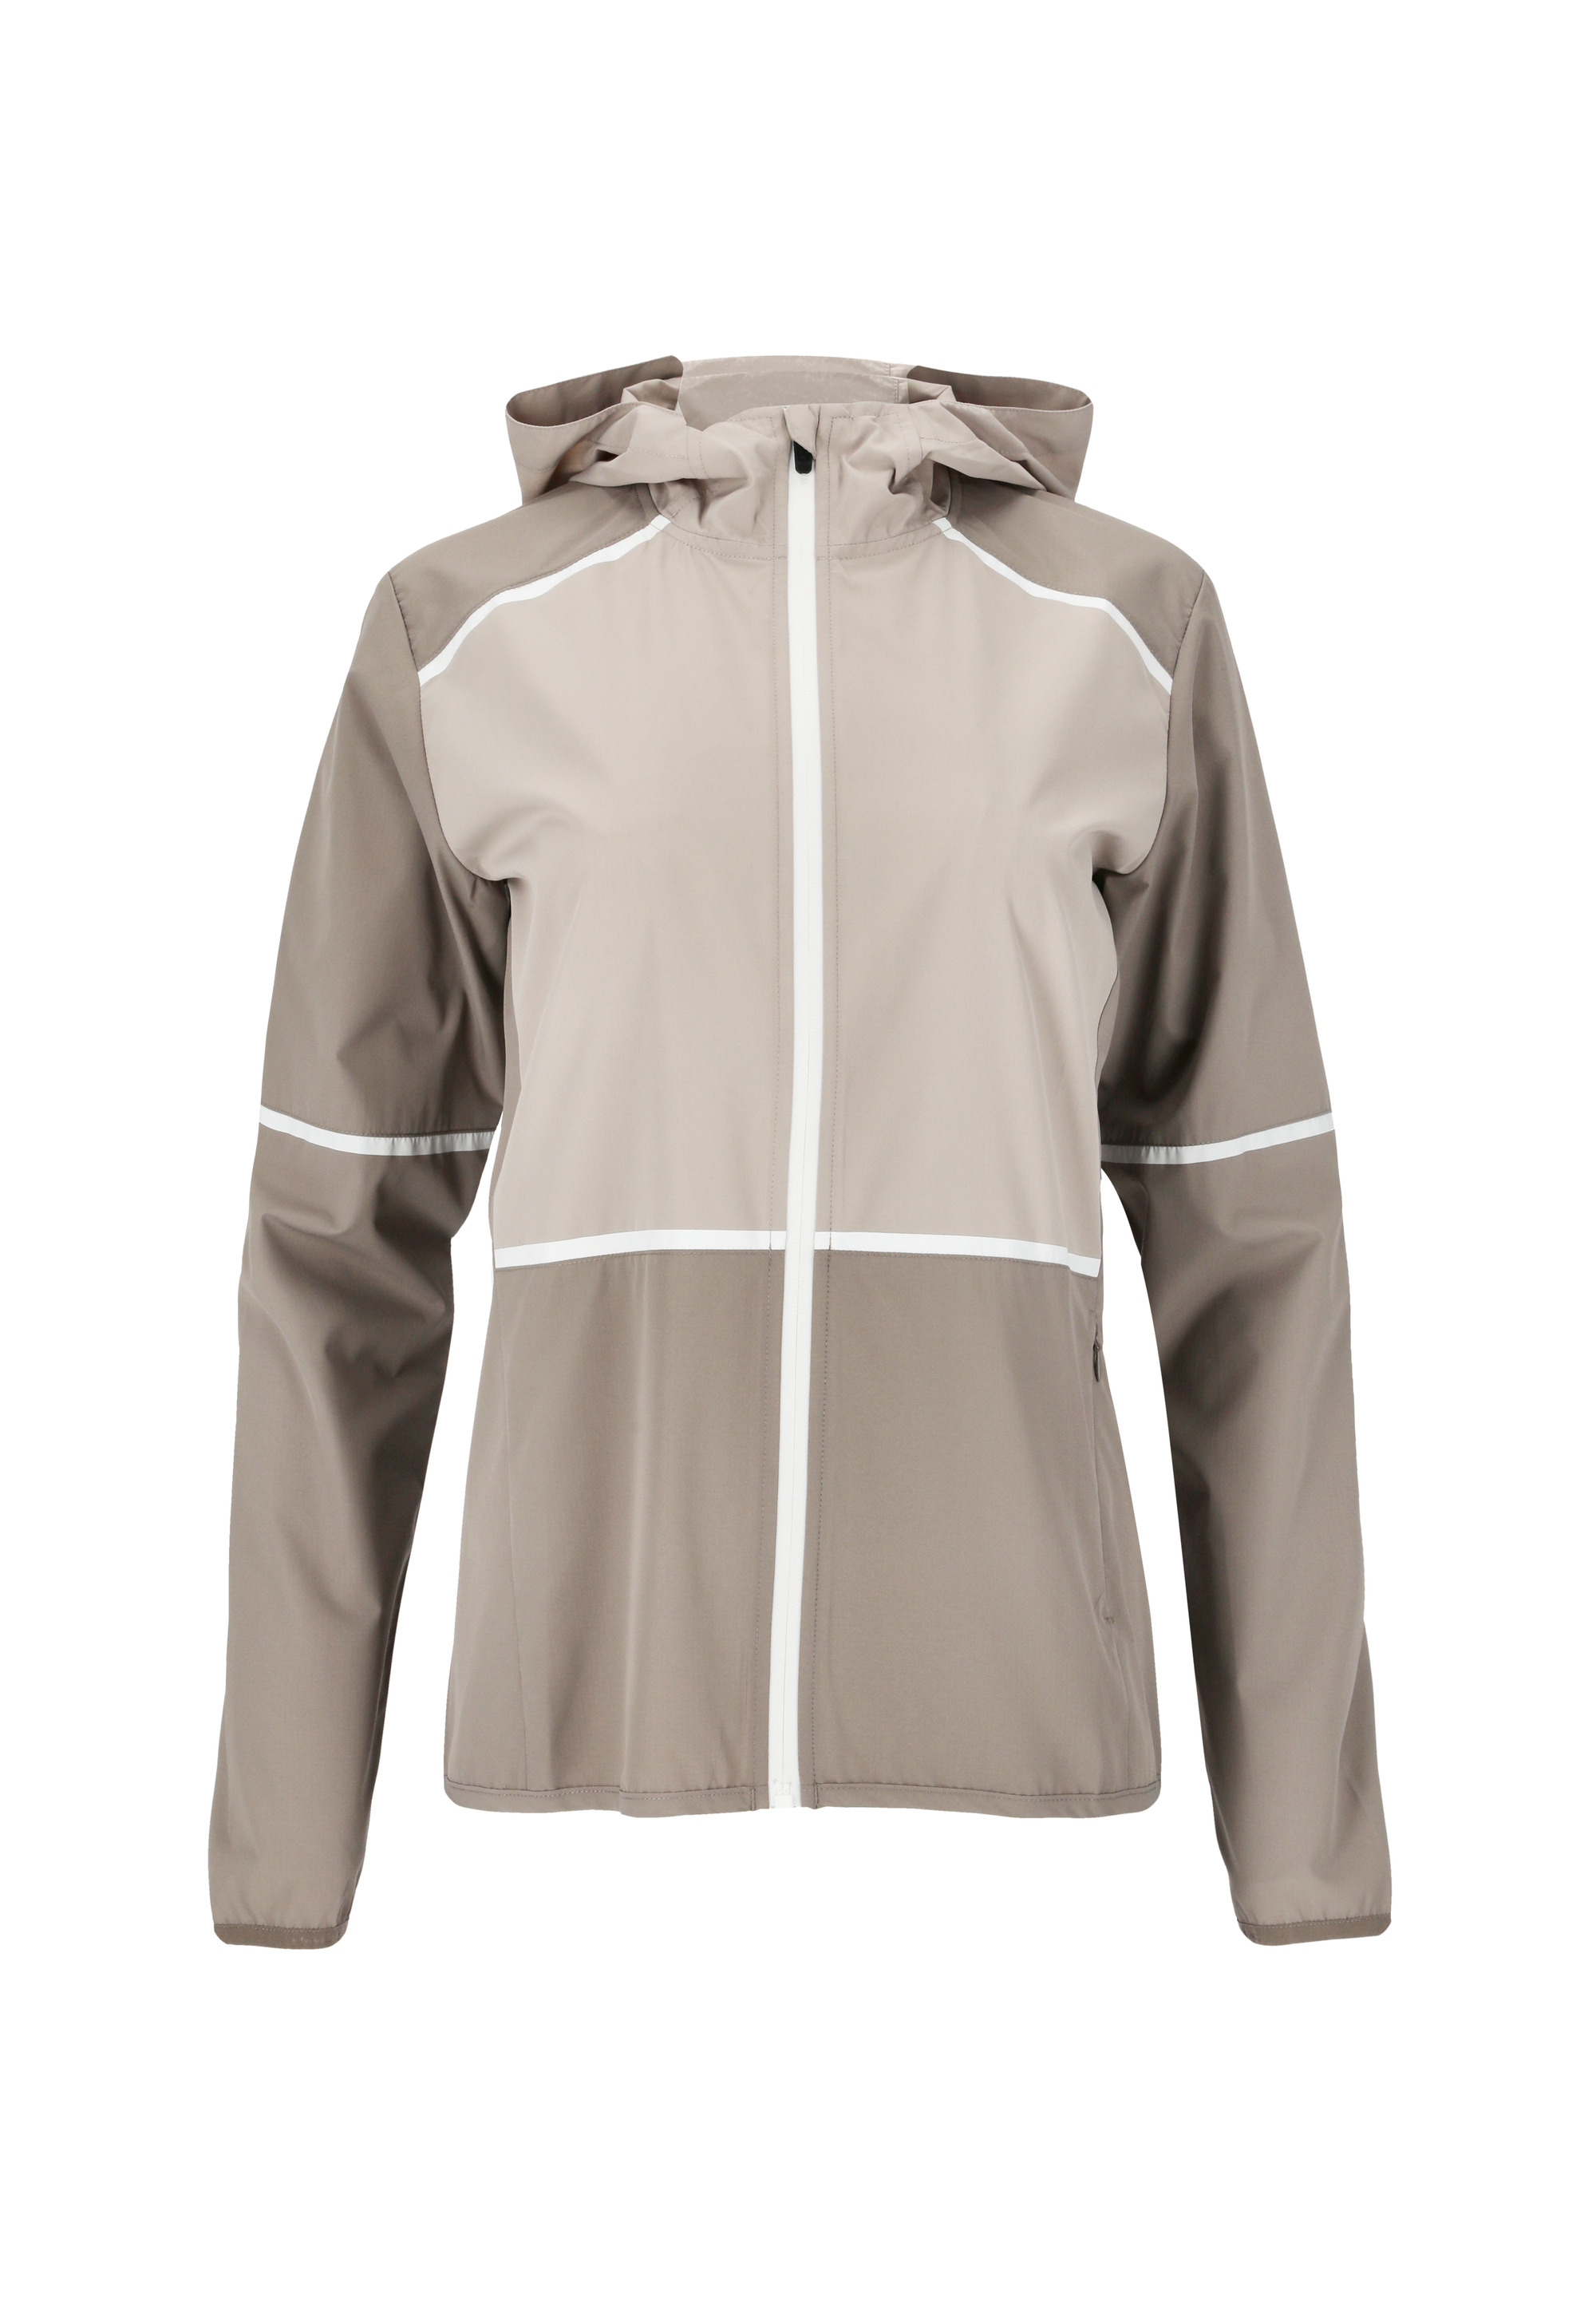 Спортивная куртка Endurance Flothar, цвет 3139 Driftwood